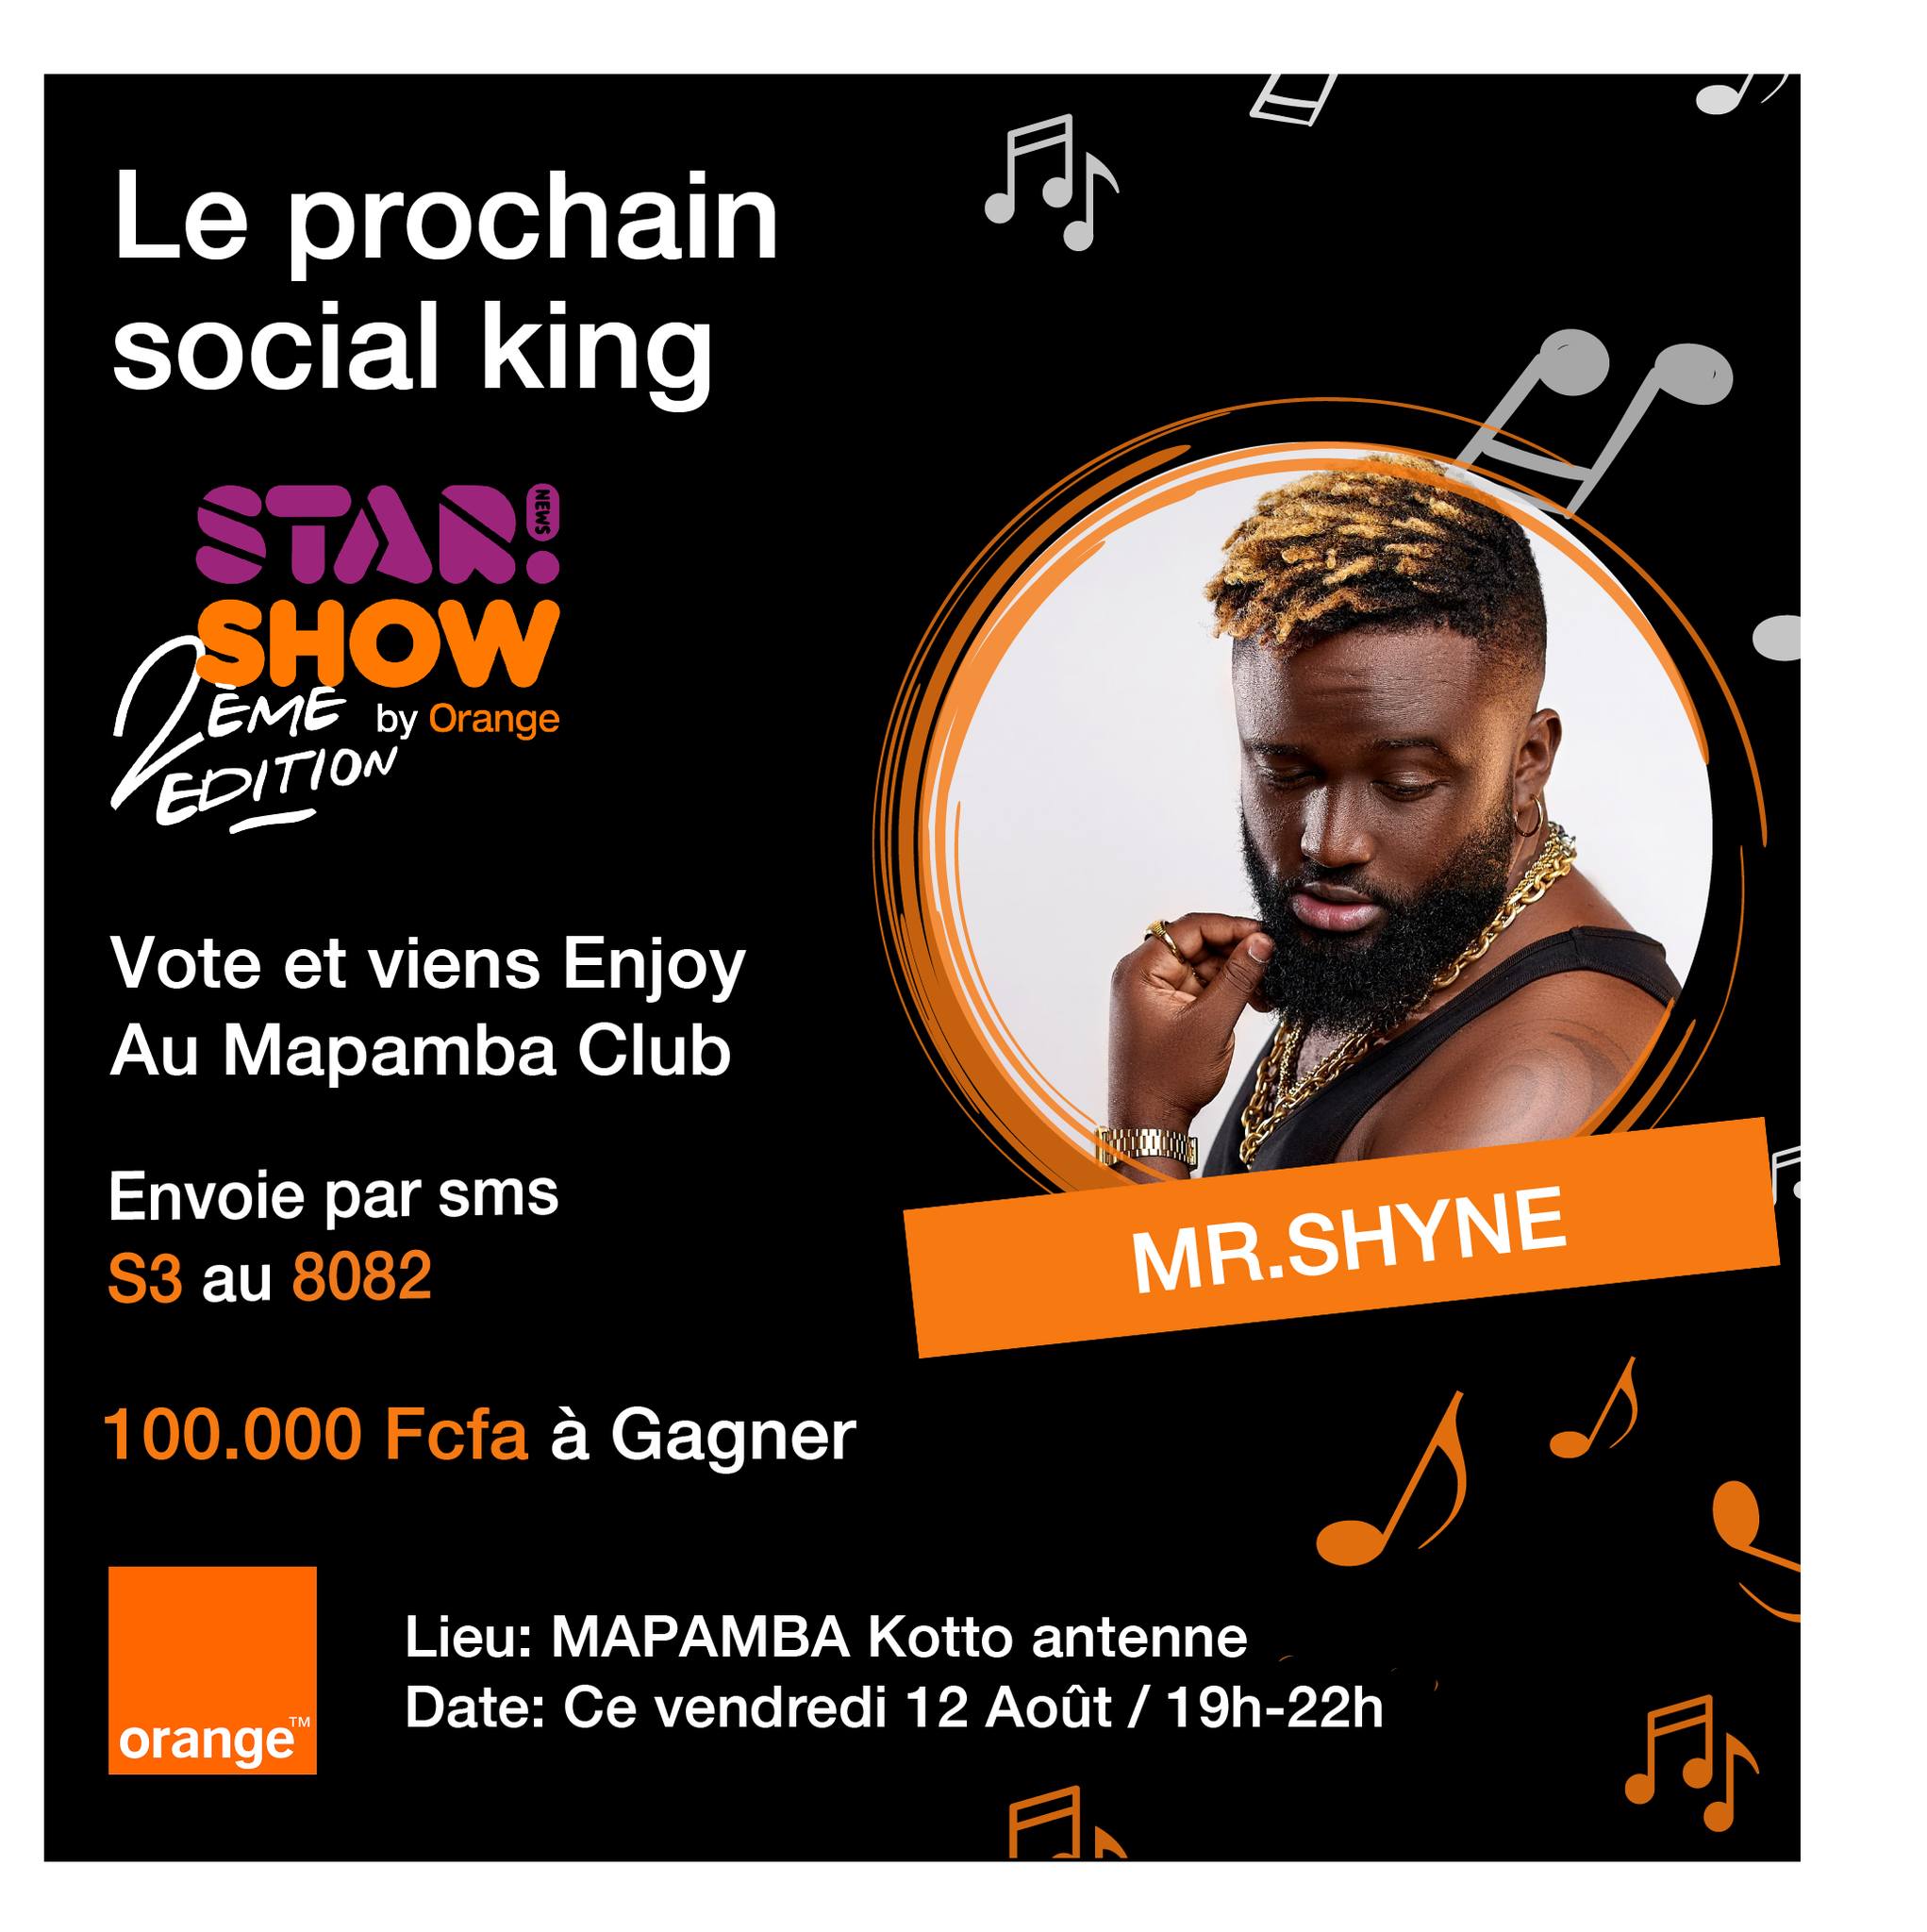 Stars News Show by Orange : Vote ton artiste préféré et gagne 100 000 F. Cfa, la proposition de Star News Cameroun aux abonnés